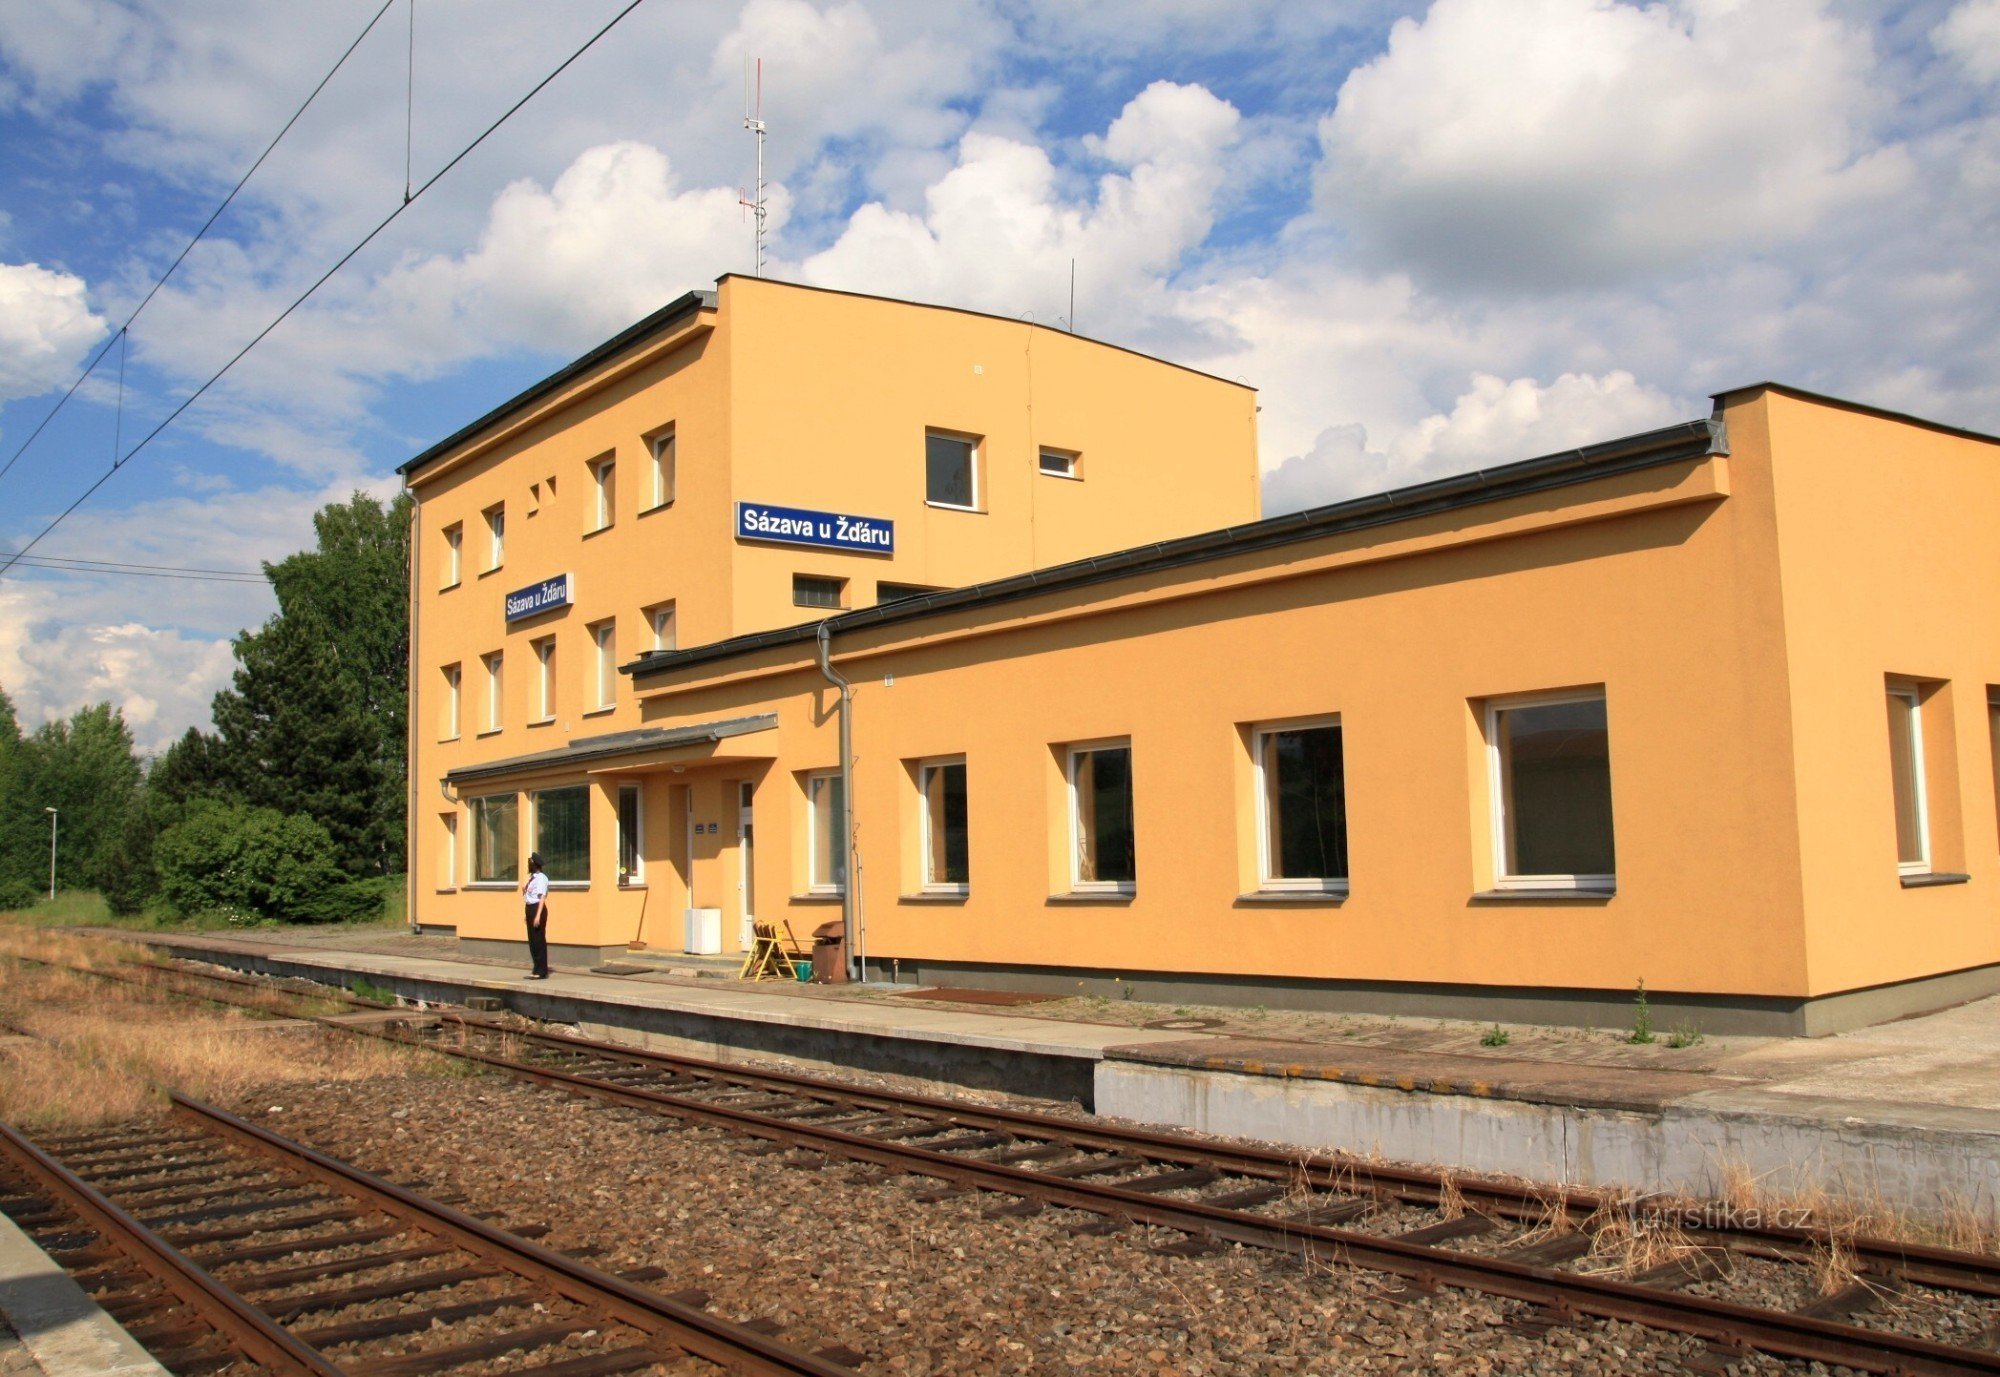 Sázava u Žďár - stacja kolejowa